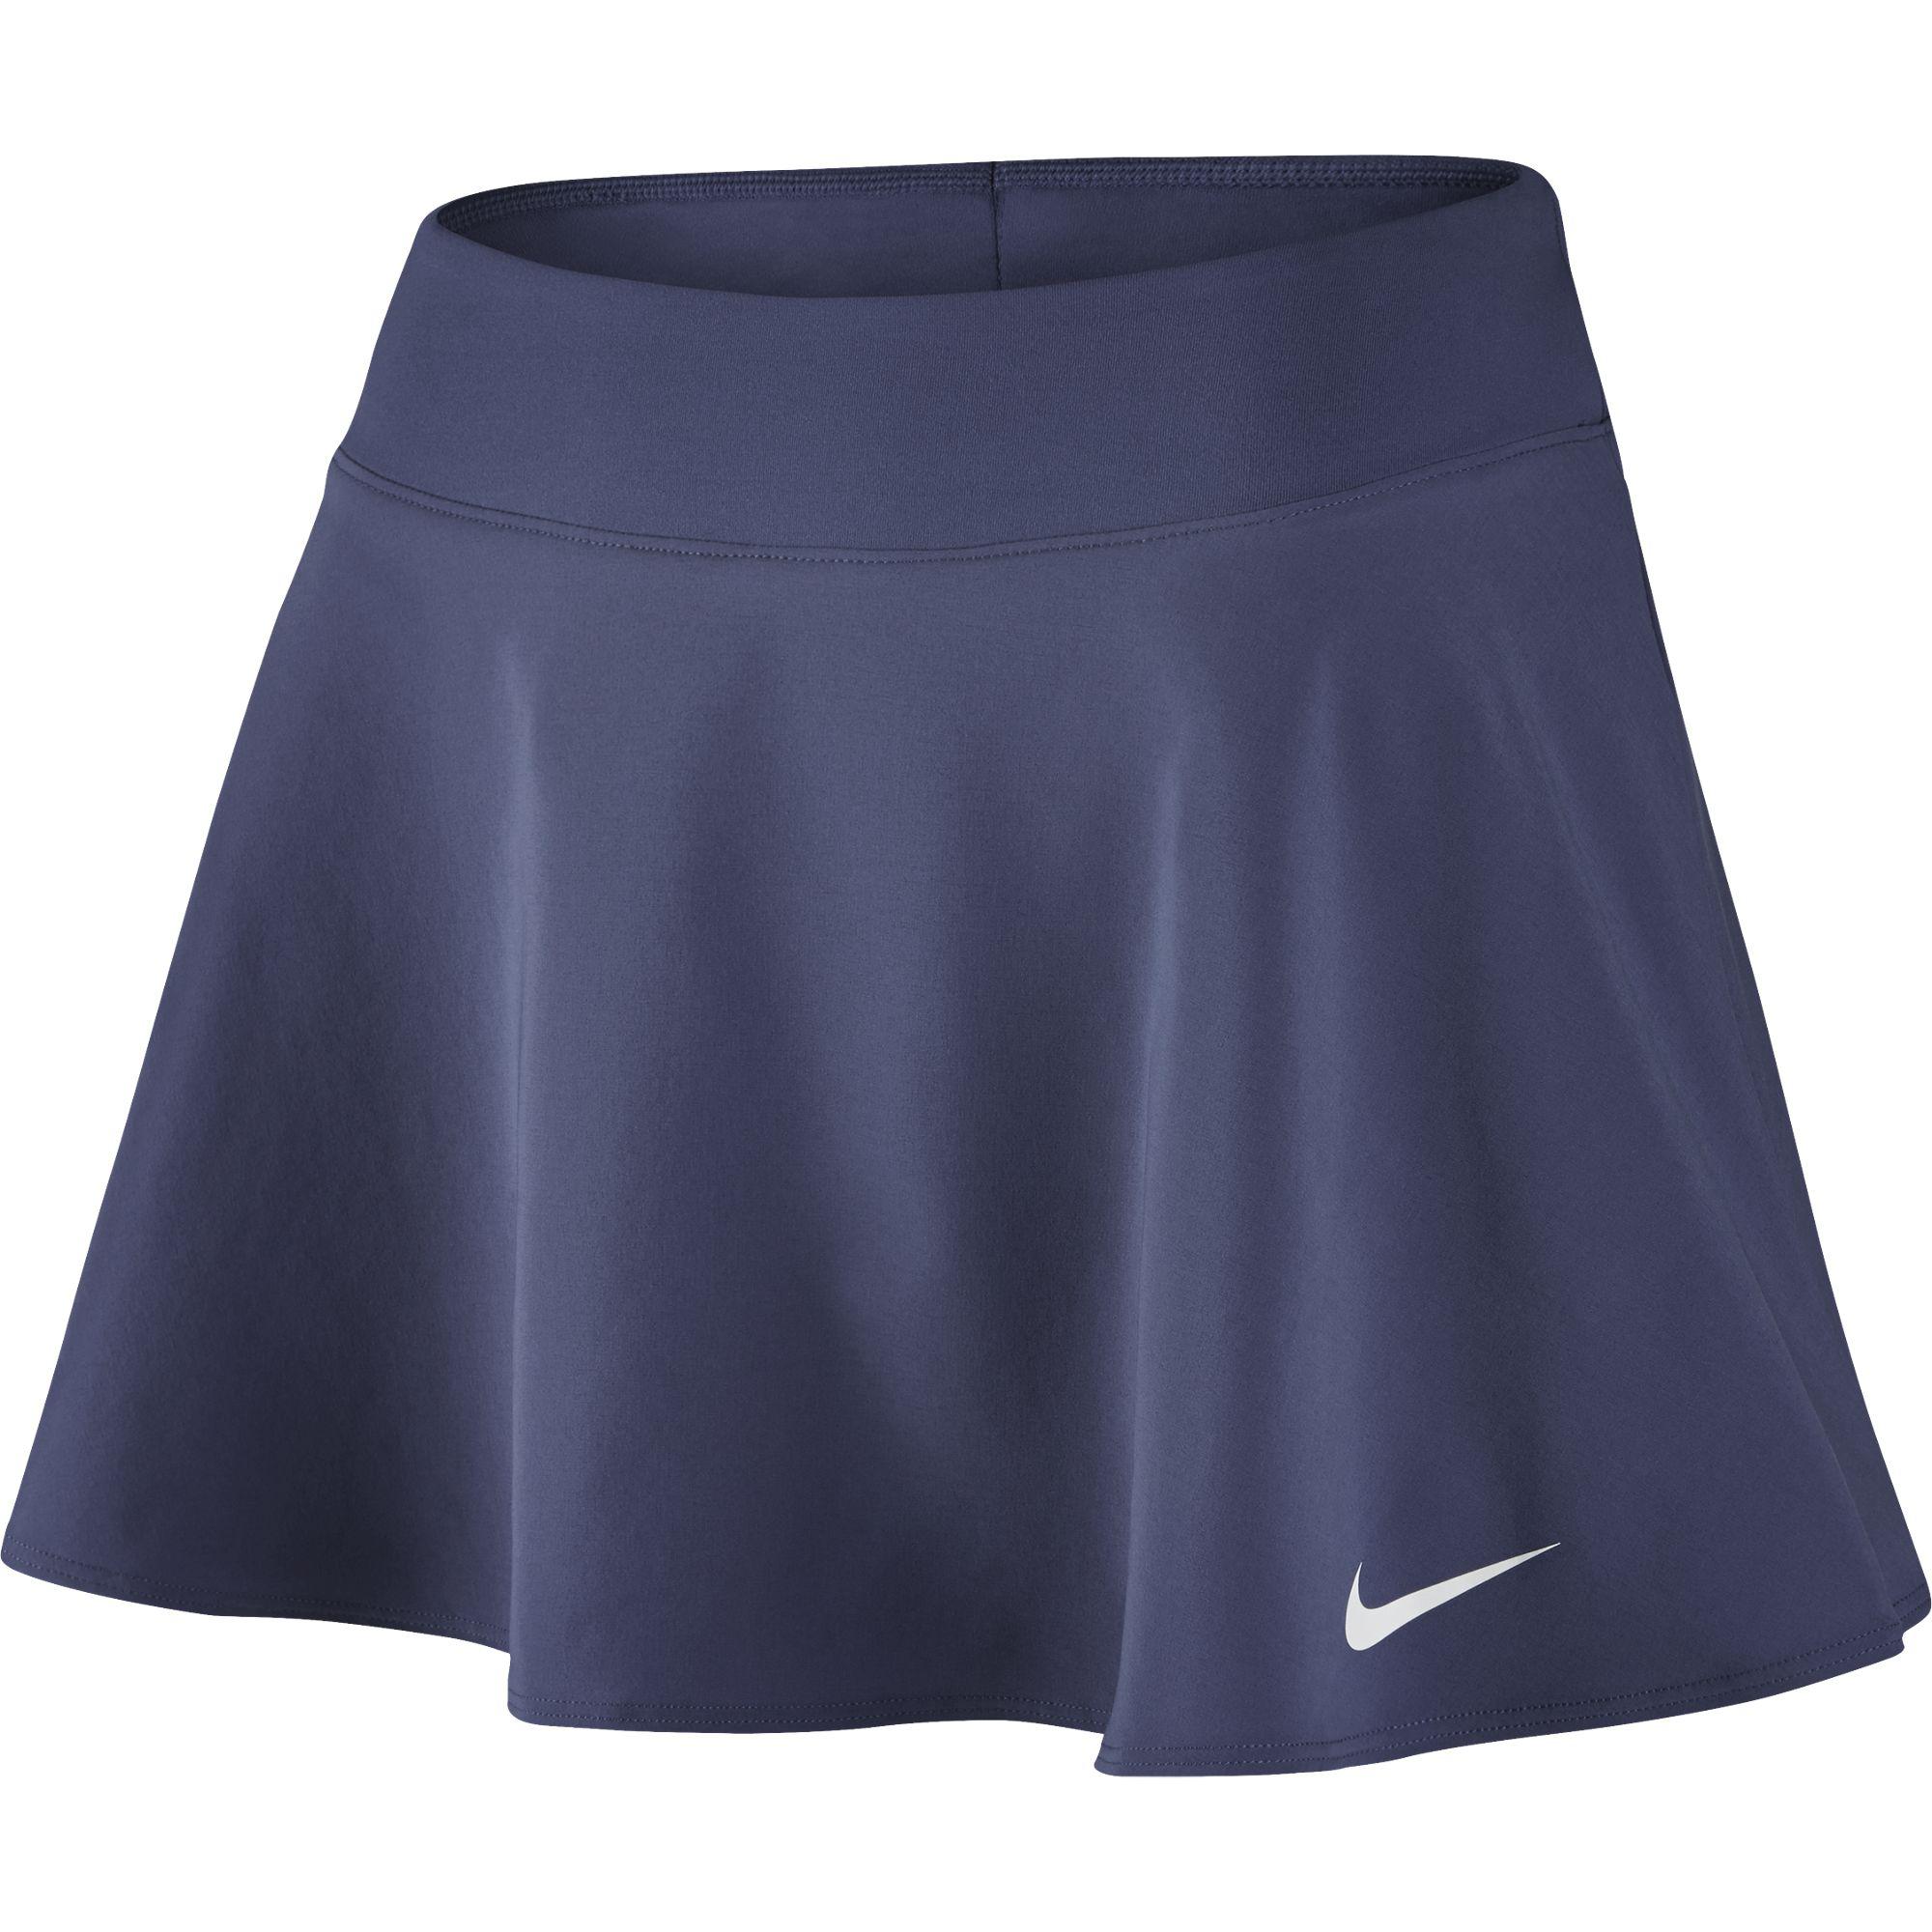 Юбка найк. Шорты Nike w NKCT FLX Flex short. Mizuno Flex Skort (w) юбка-шорты теннисные женские черный. Юбка найк для тенниса. Голубая юбка для тенниса Nike.